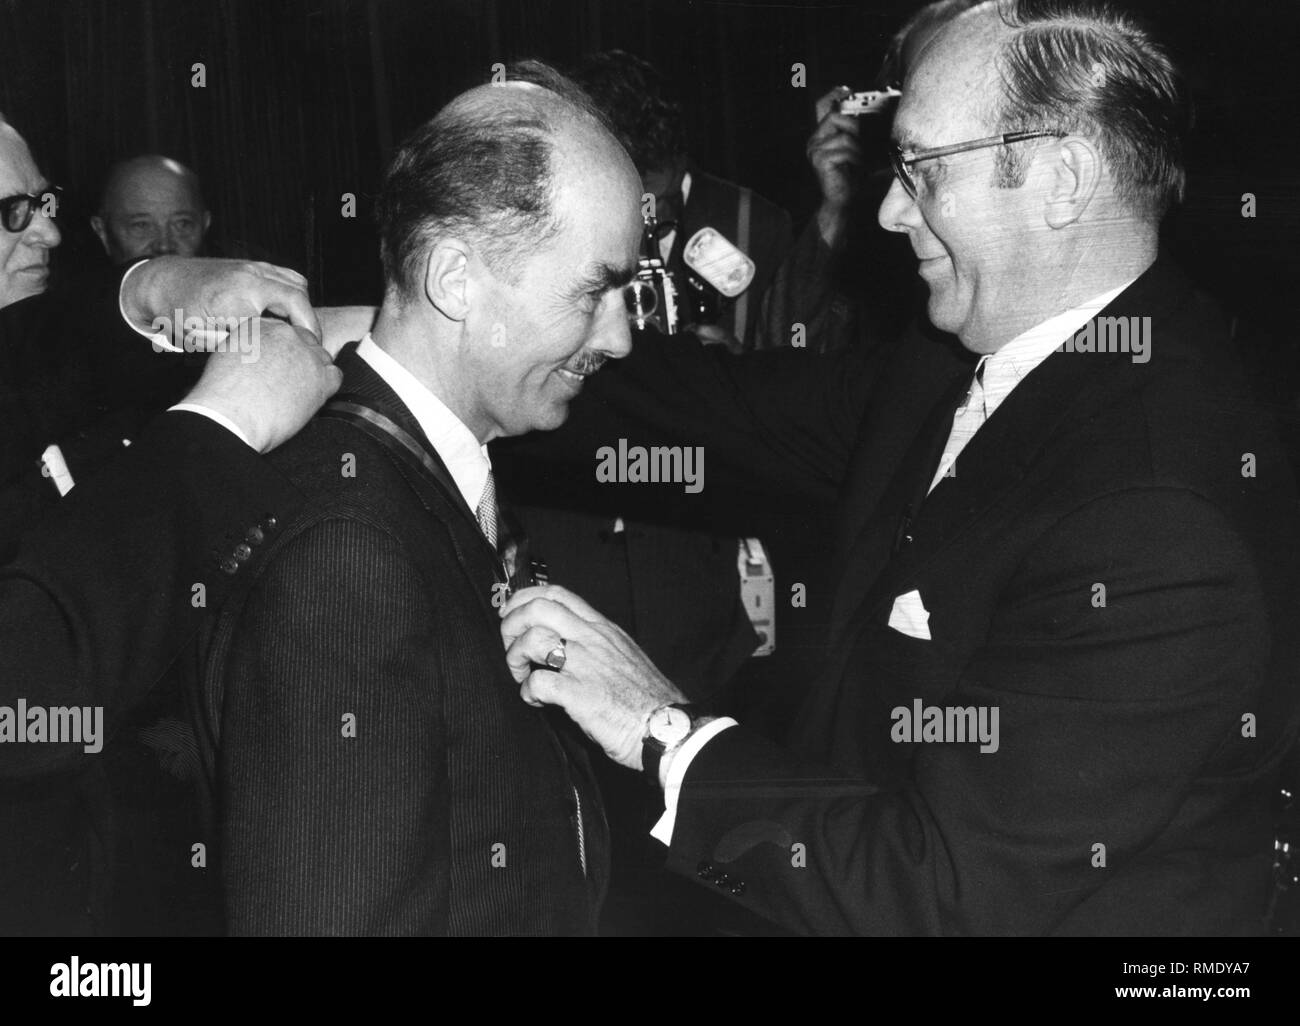 On the Sudeten German Day, Otto von Habsburg receives the Karlspreis der Landsmannschaft from the spokesman Walter Becher (right) of the Sudetendeutsche Landsmannschaft. Stock Photo